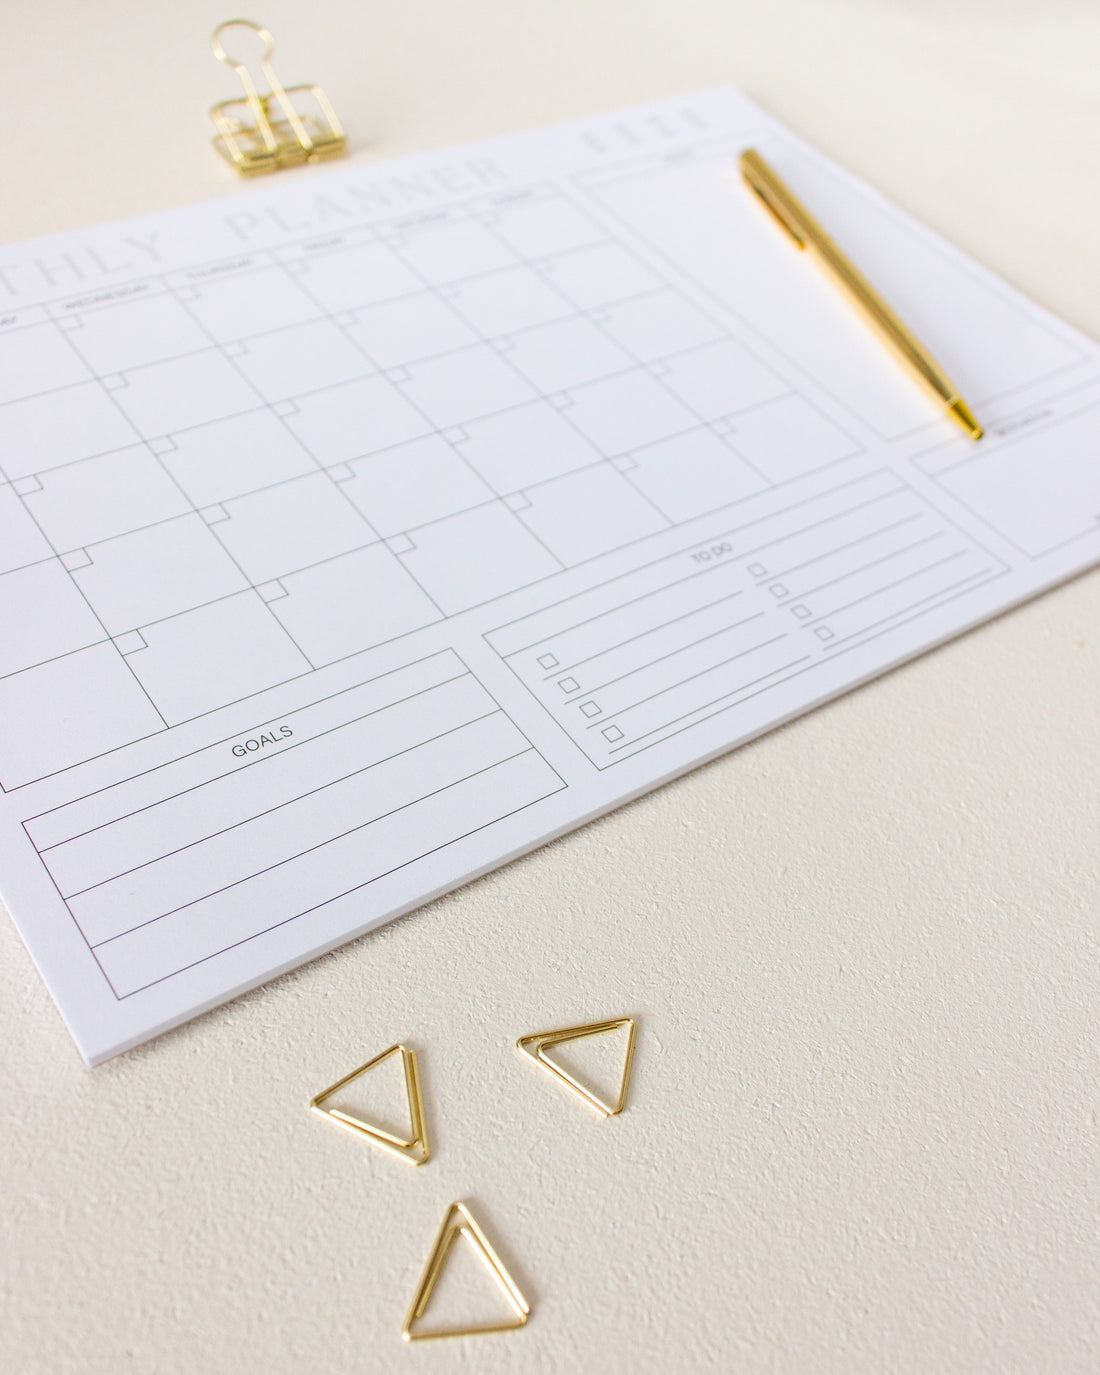 Undatierter Monatsplaner DIN A4 Schreibtischunterlage mit goldenem Kugelschreiber, goldener Foldbackklammer und goldenen dreieckigen Büroklammern auf hell-beigem Untergrund.